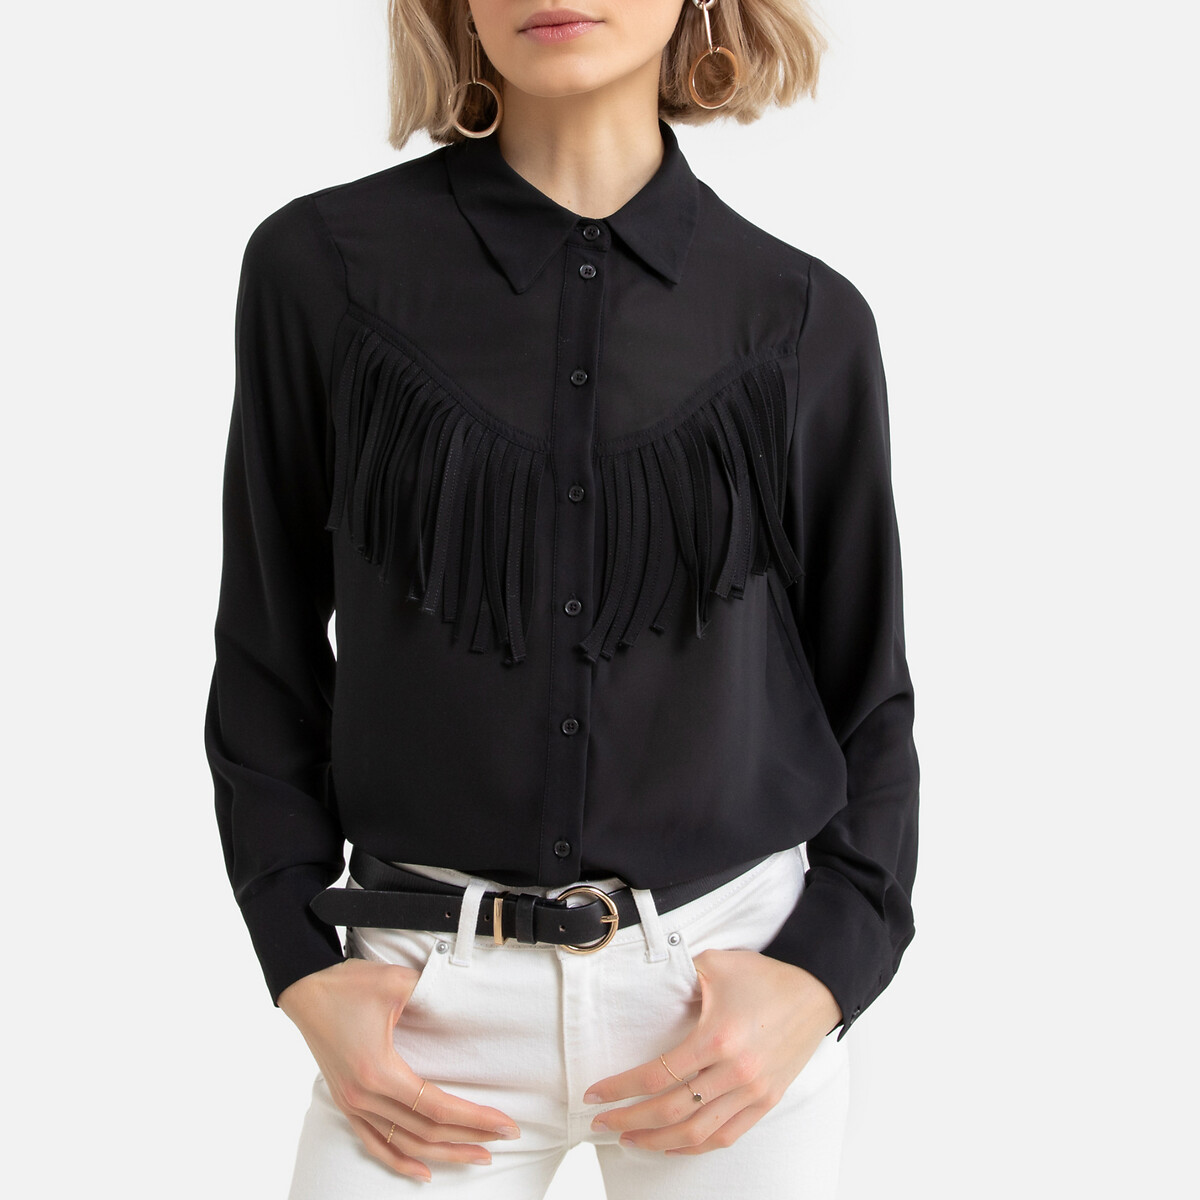 Nogen Modernisering kontroversiel Regular fit cowboy blouse with fringe details black Vero Moda | La Redoute